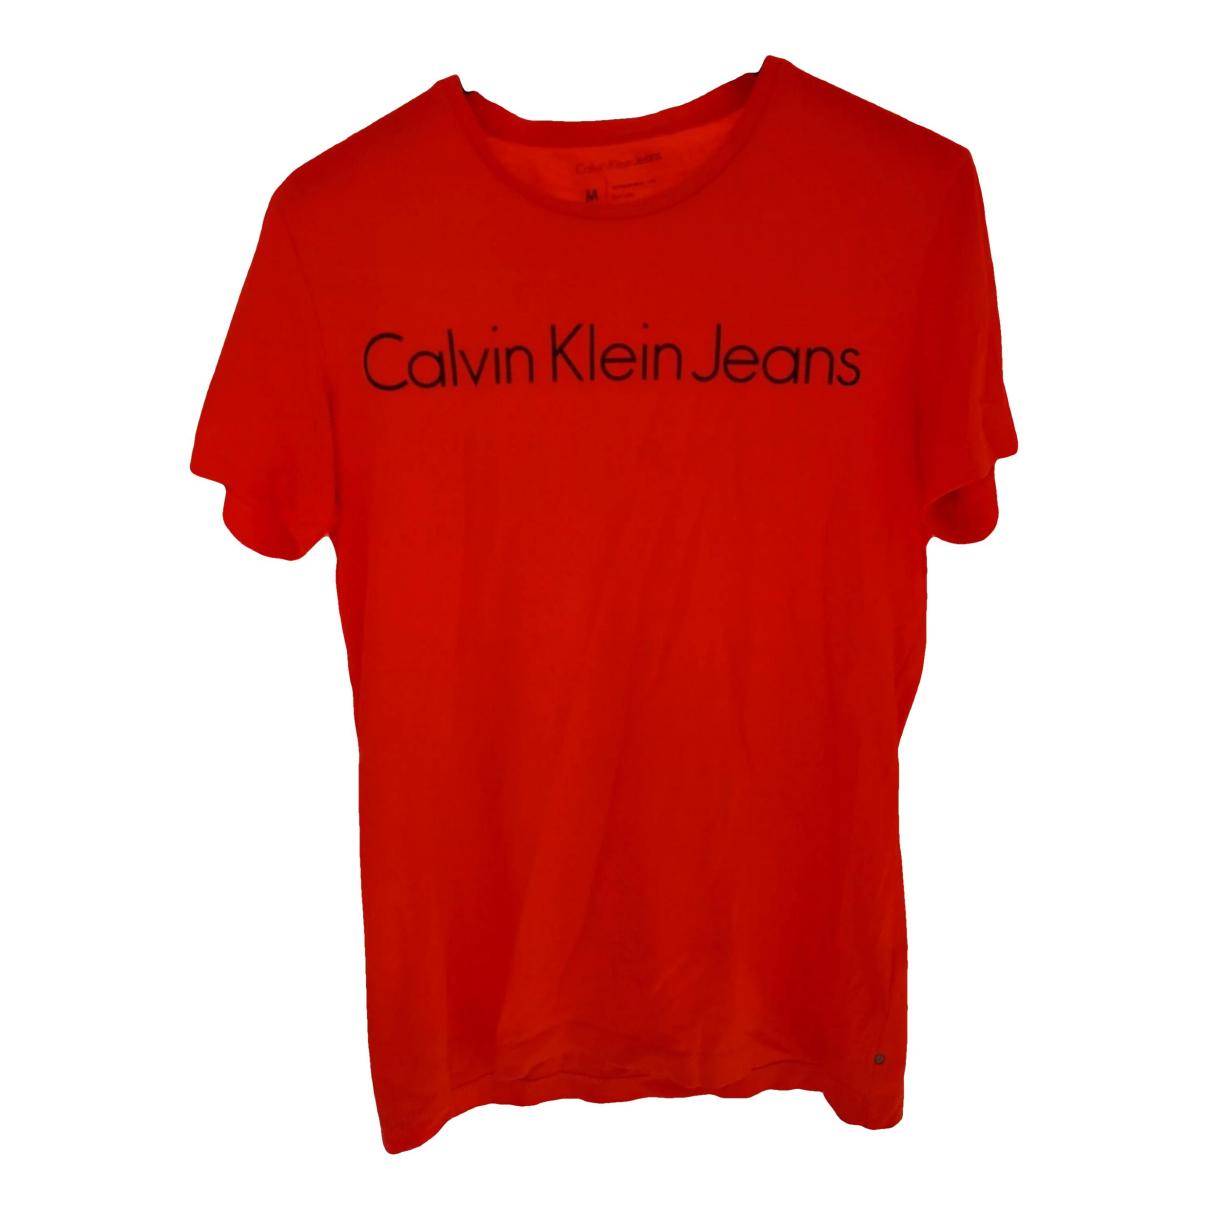 T-shirt CALVIN KLEIN JEANS Orange size M International in Cotton - 34830098